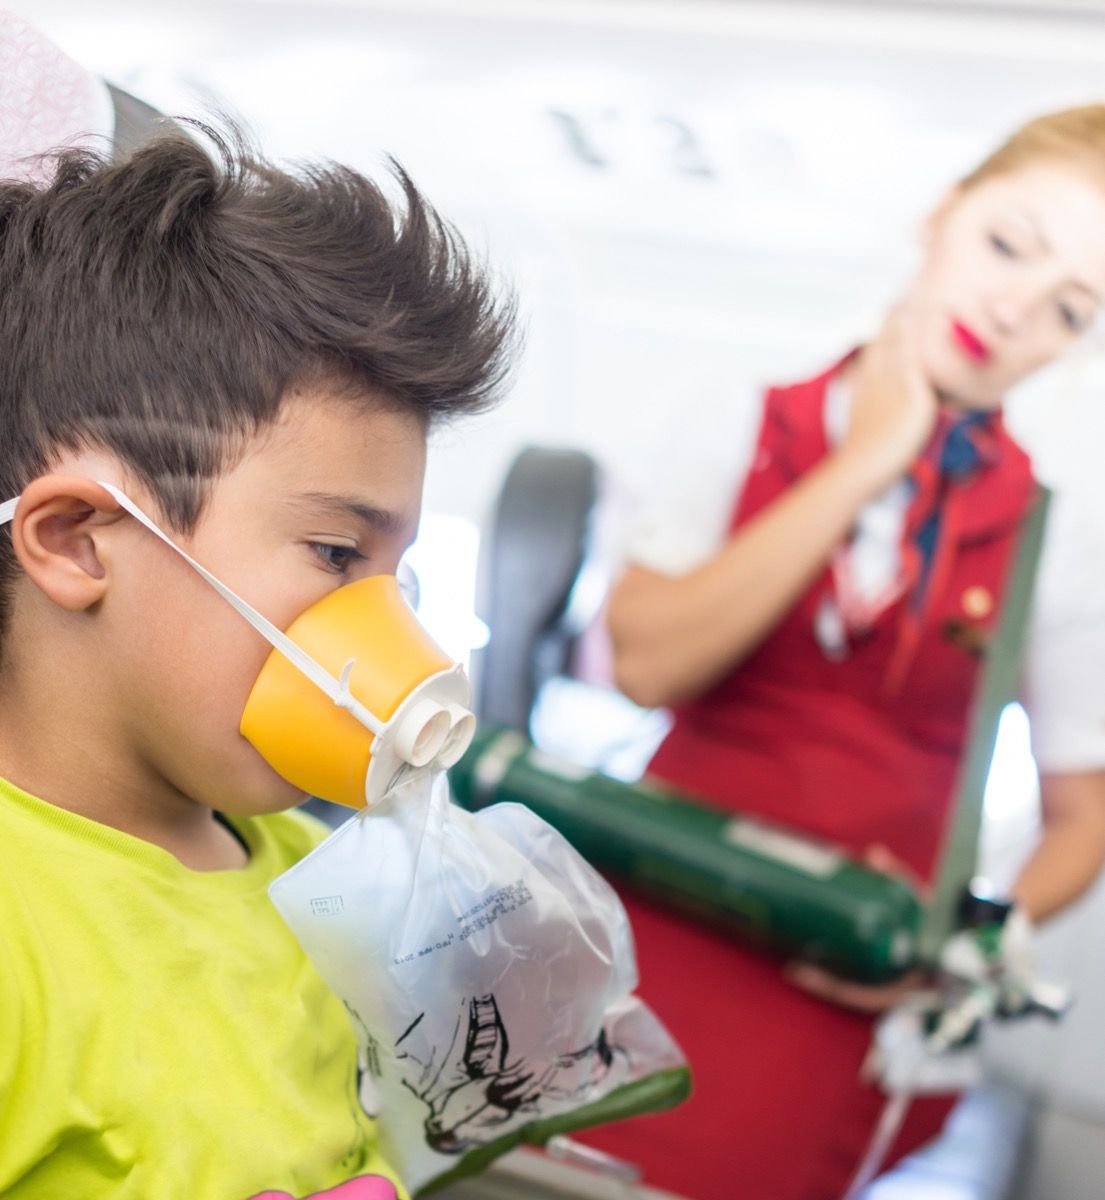 zēns lidmašīnas sēdeklī ar skābekļa masku, kad stjuarte skatās, kaitina stjuarte